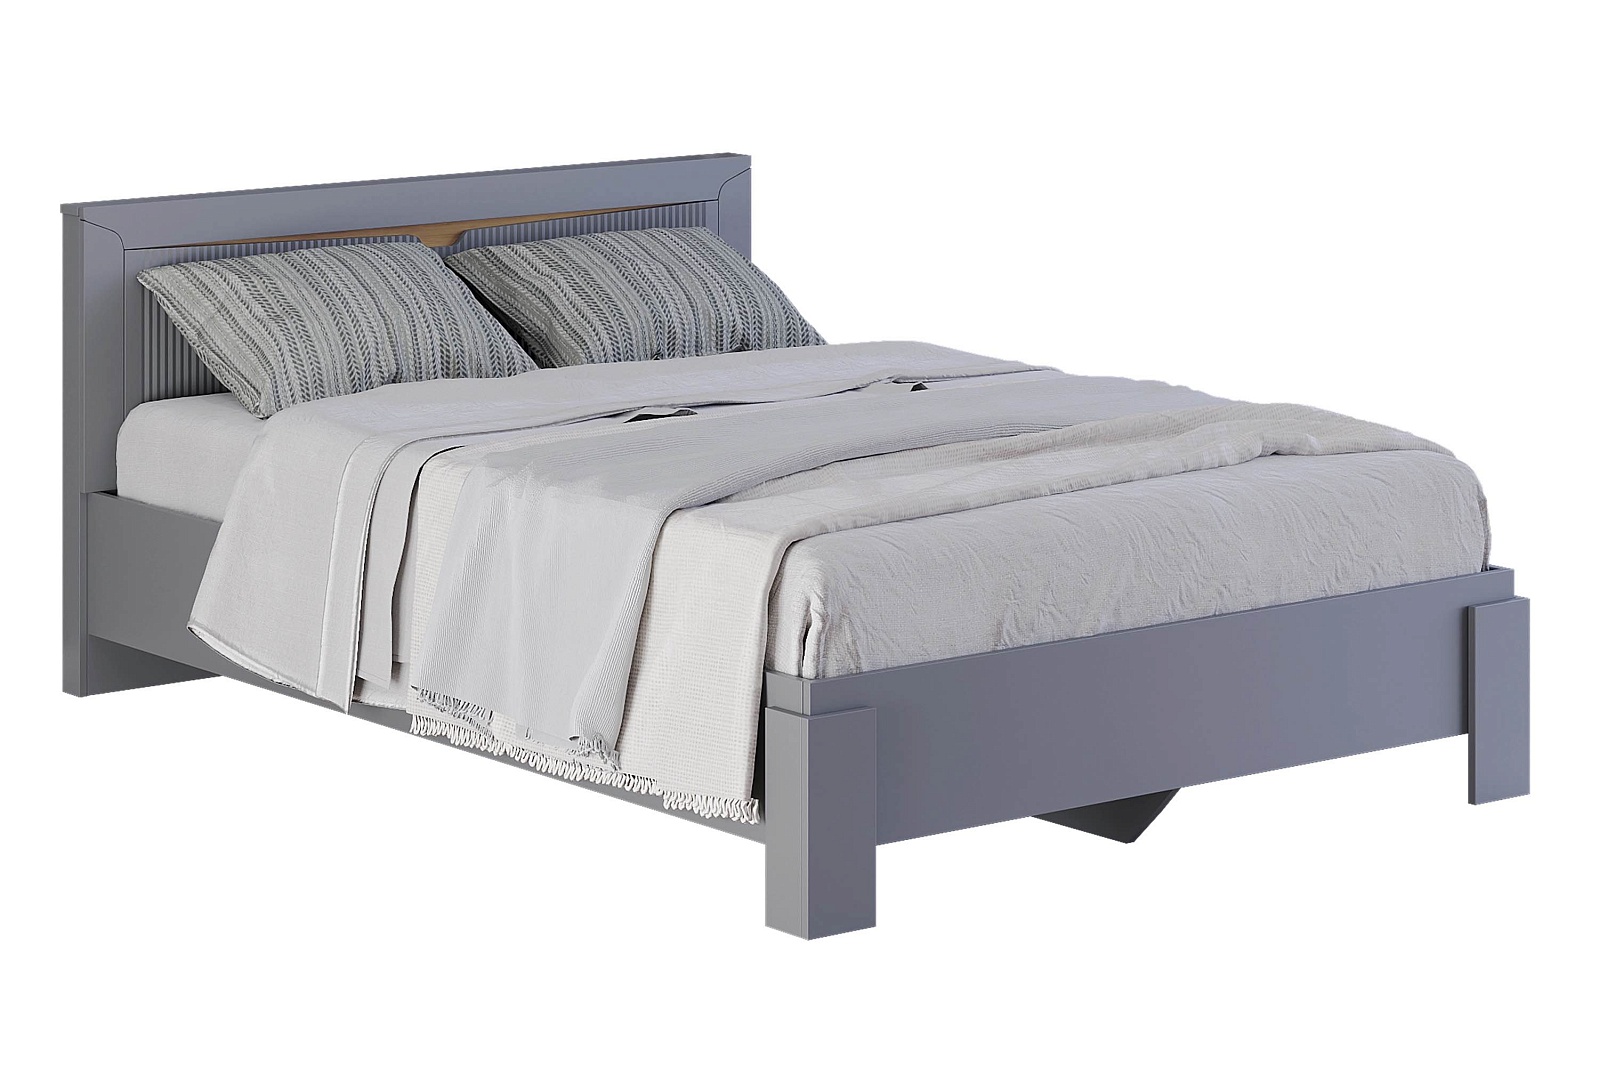 ТОРИС кровать 140 см (серый графит)